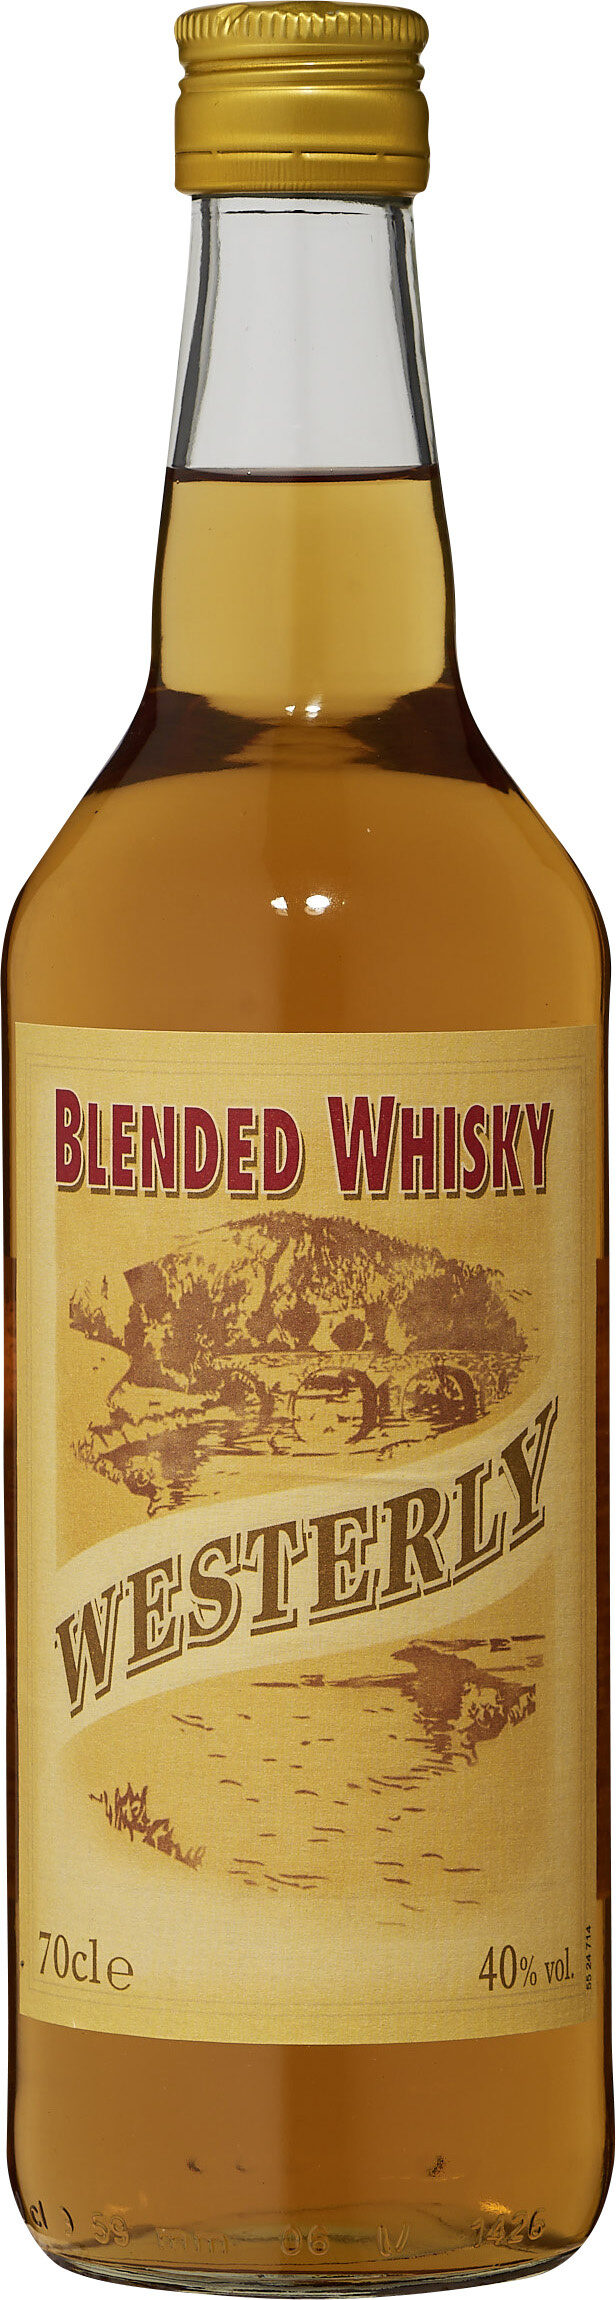 Blended Whisky - Product - fr